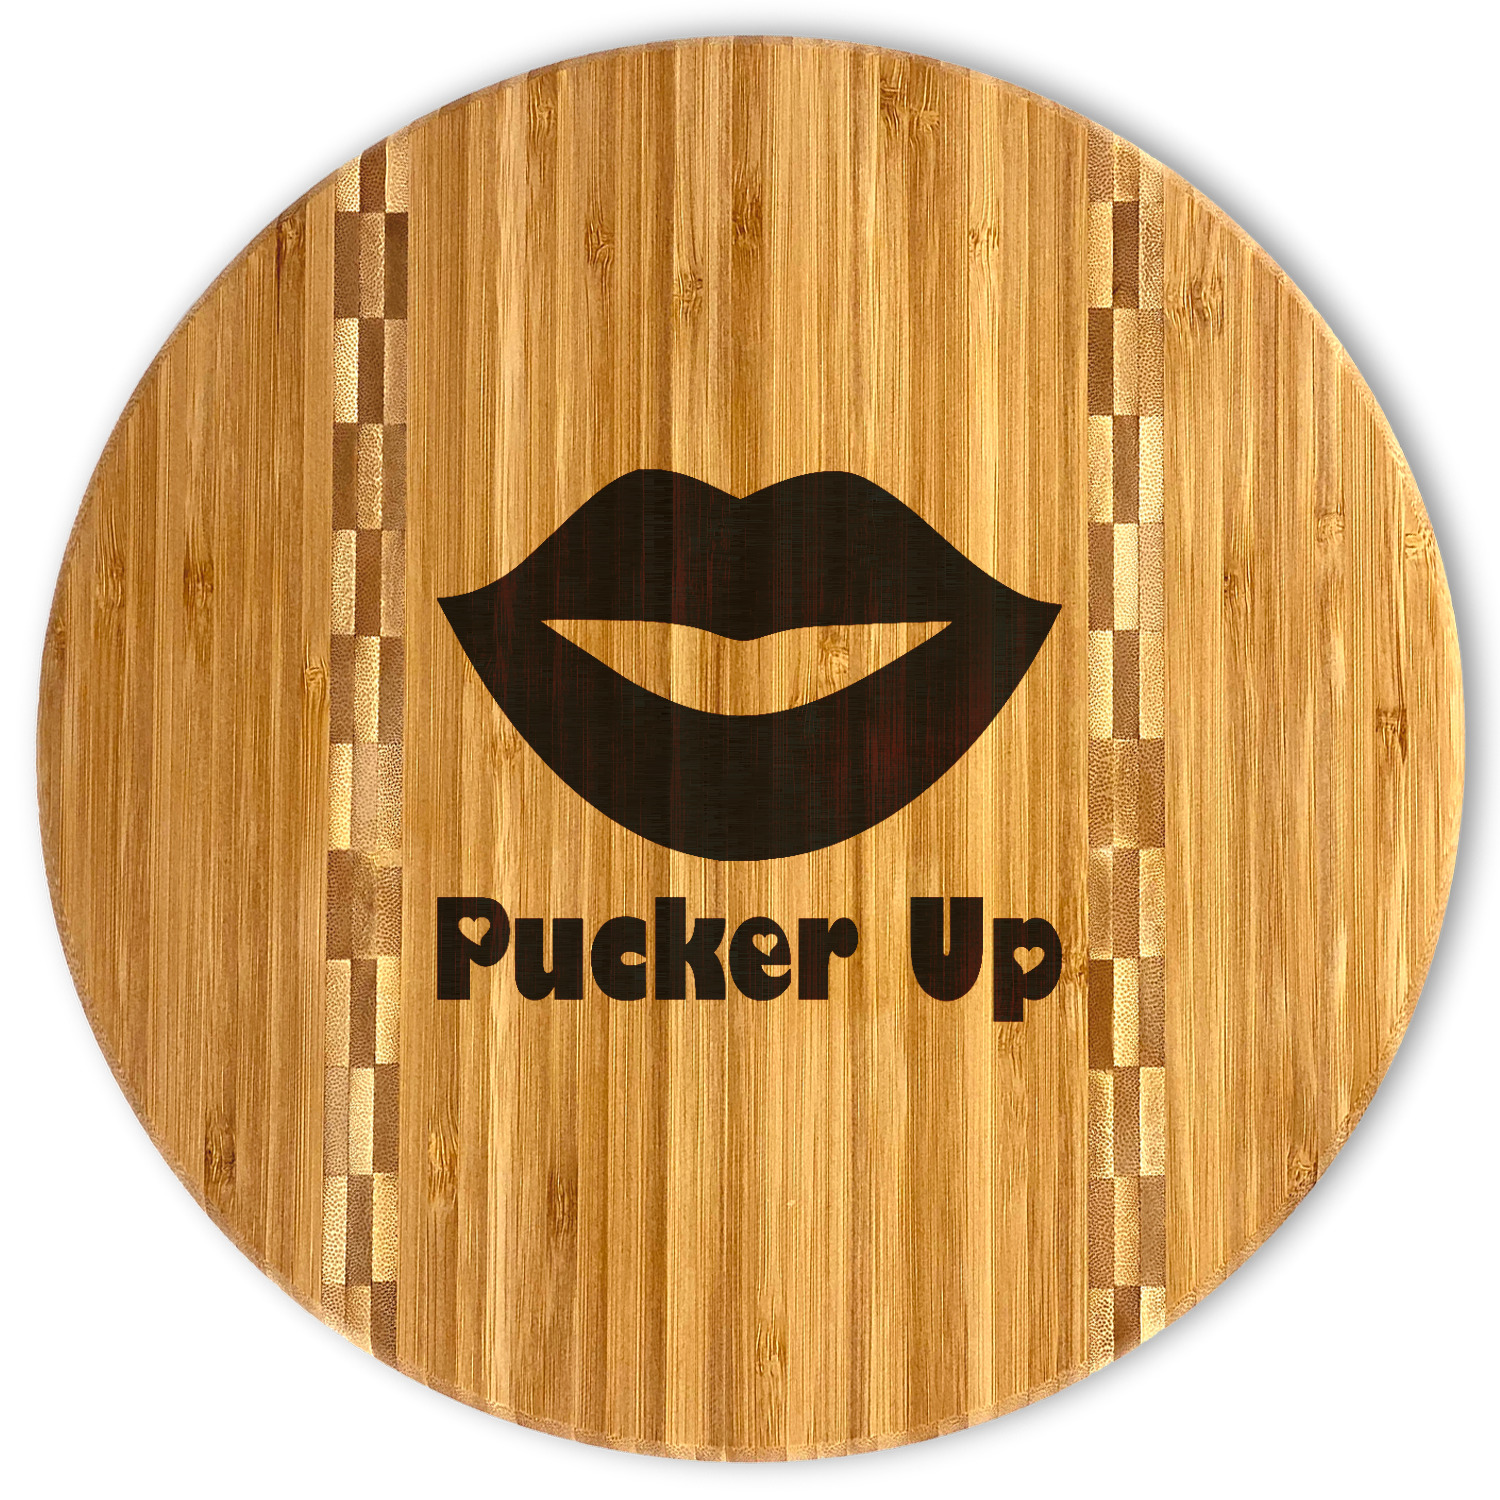 Lips (Pucker Up) Design Custom Bamboo Cutting Board